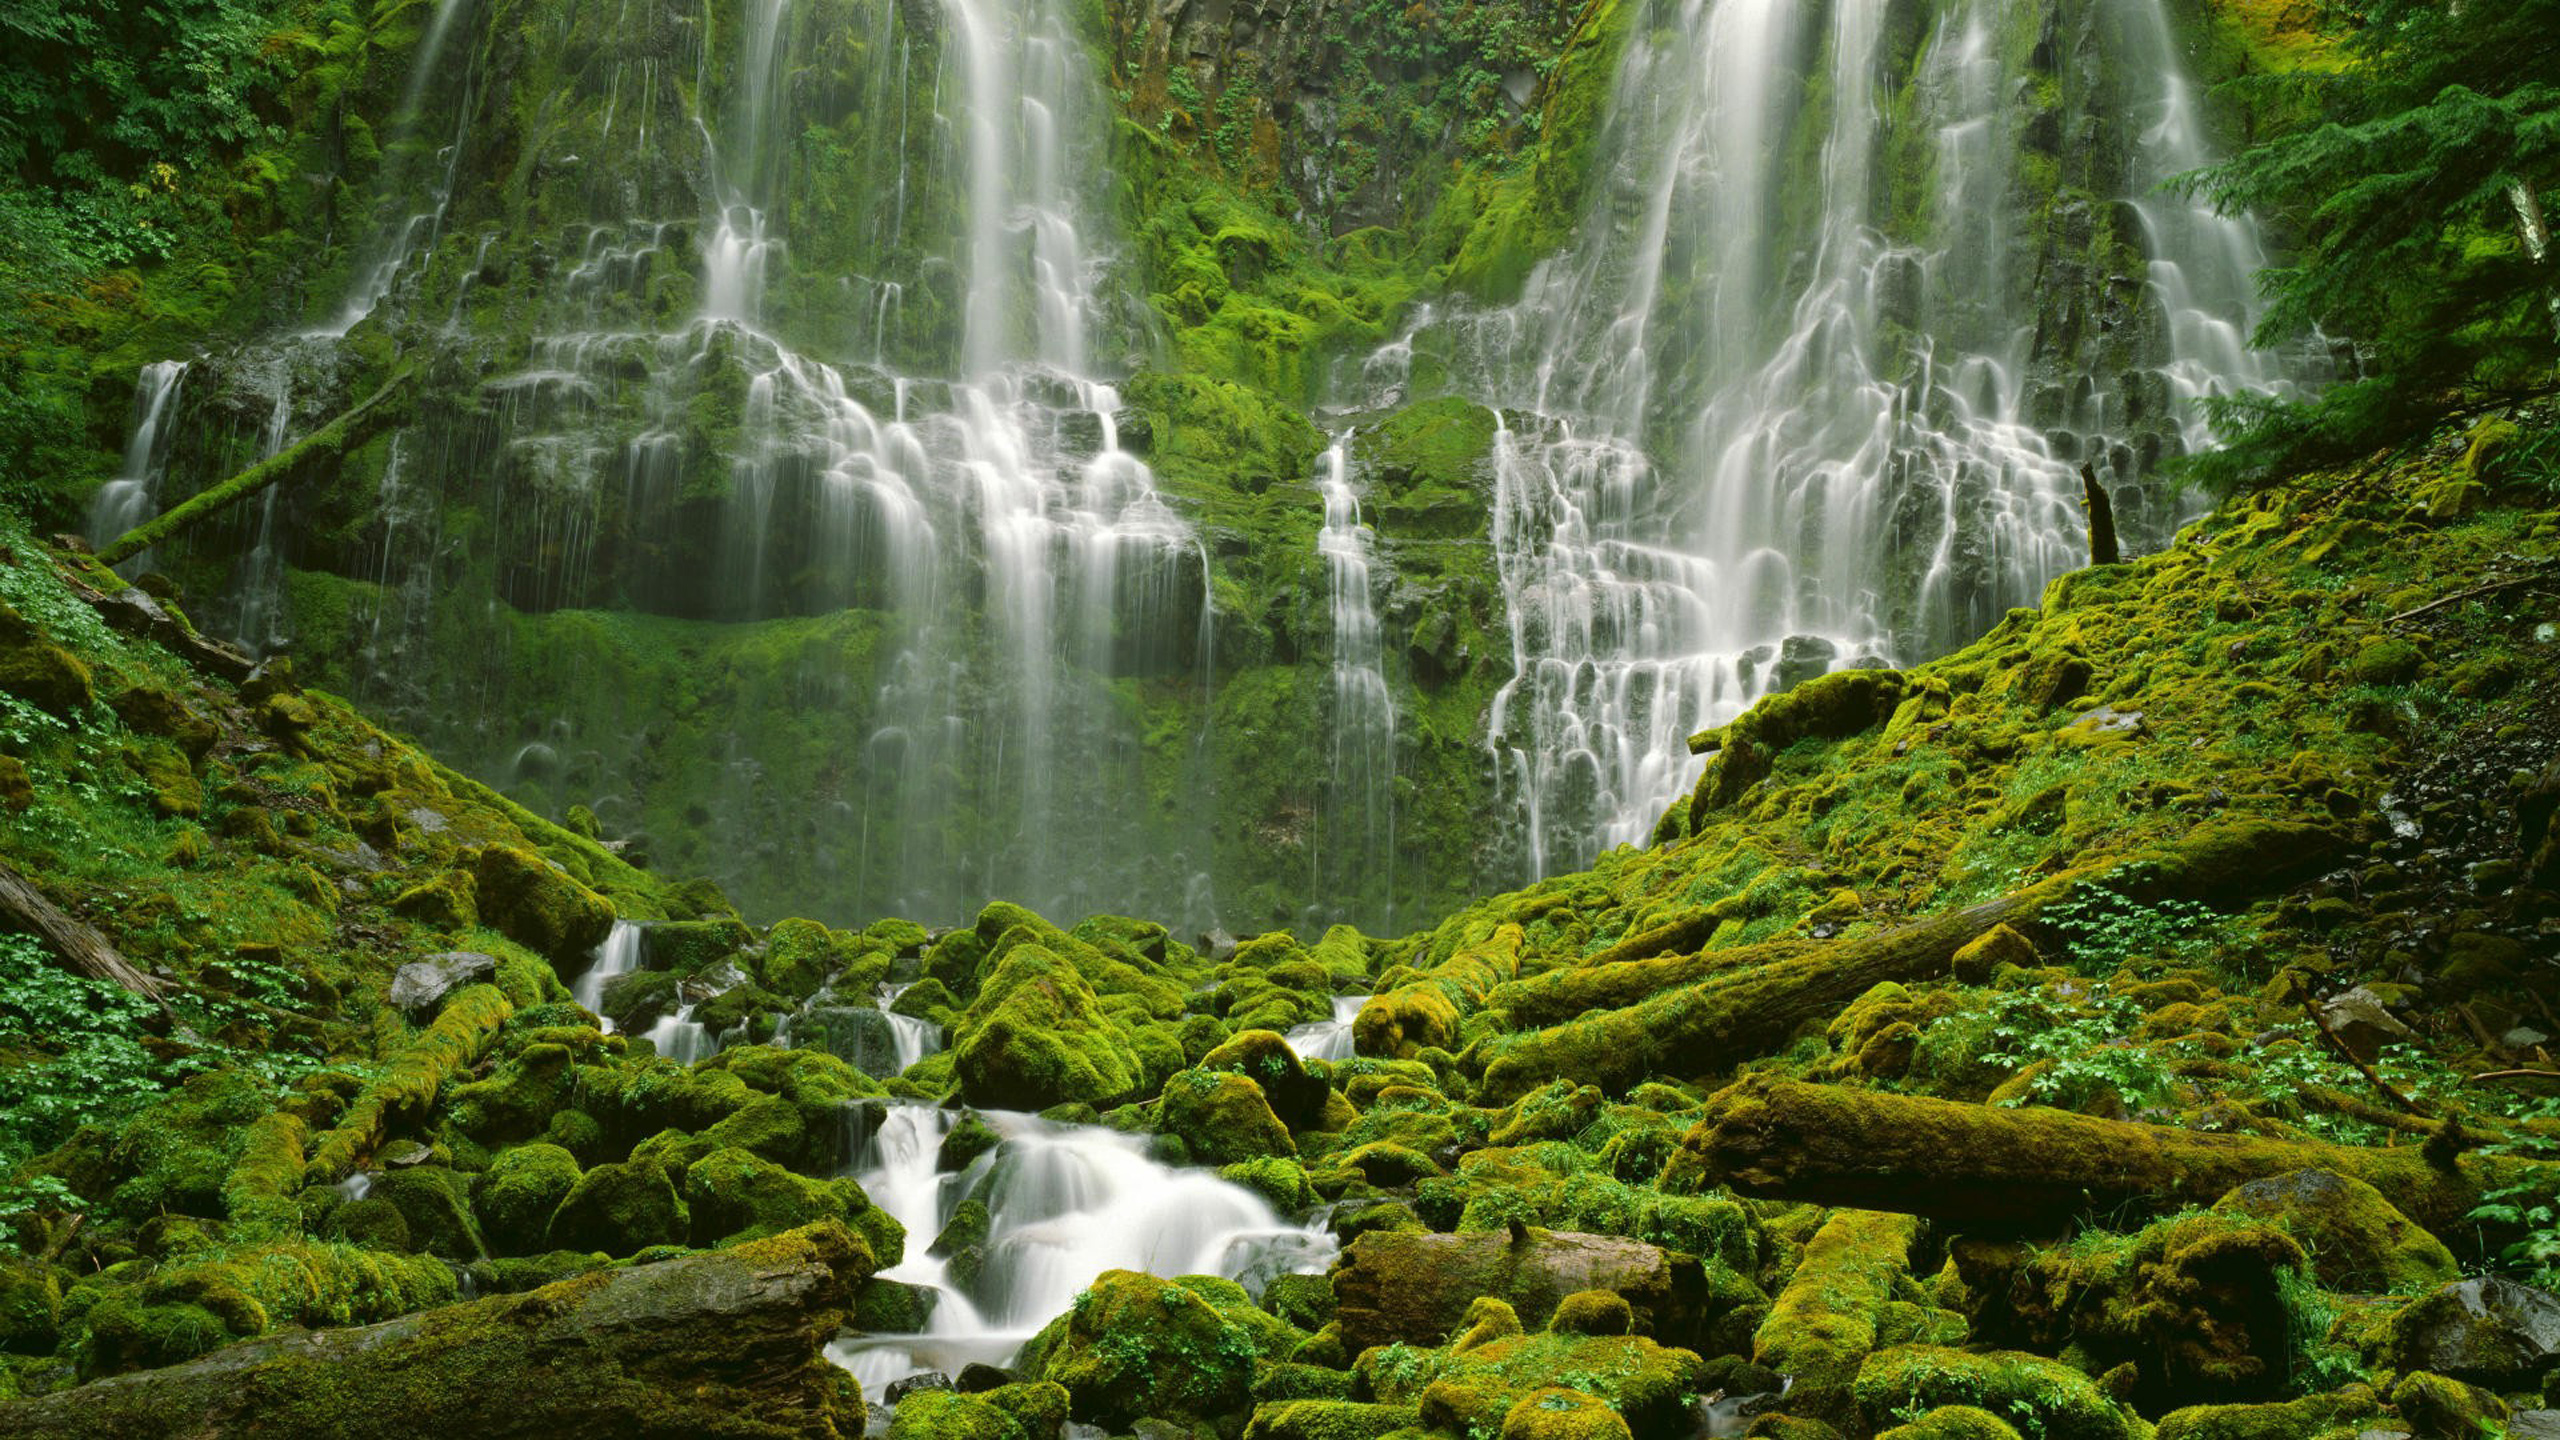 Обои на телефон живой водопад. Азорские острова водопады. Водопад Сангардак. Карлинвилль водопад. Водопад прокси, Орегон.